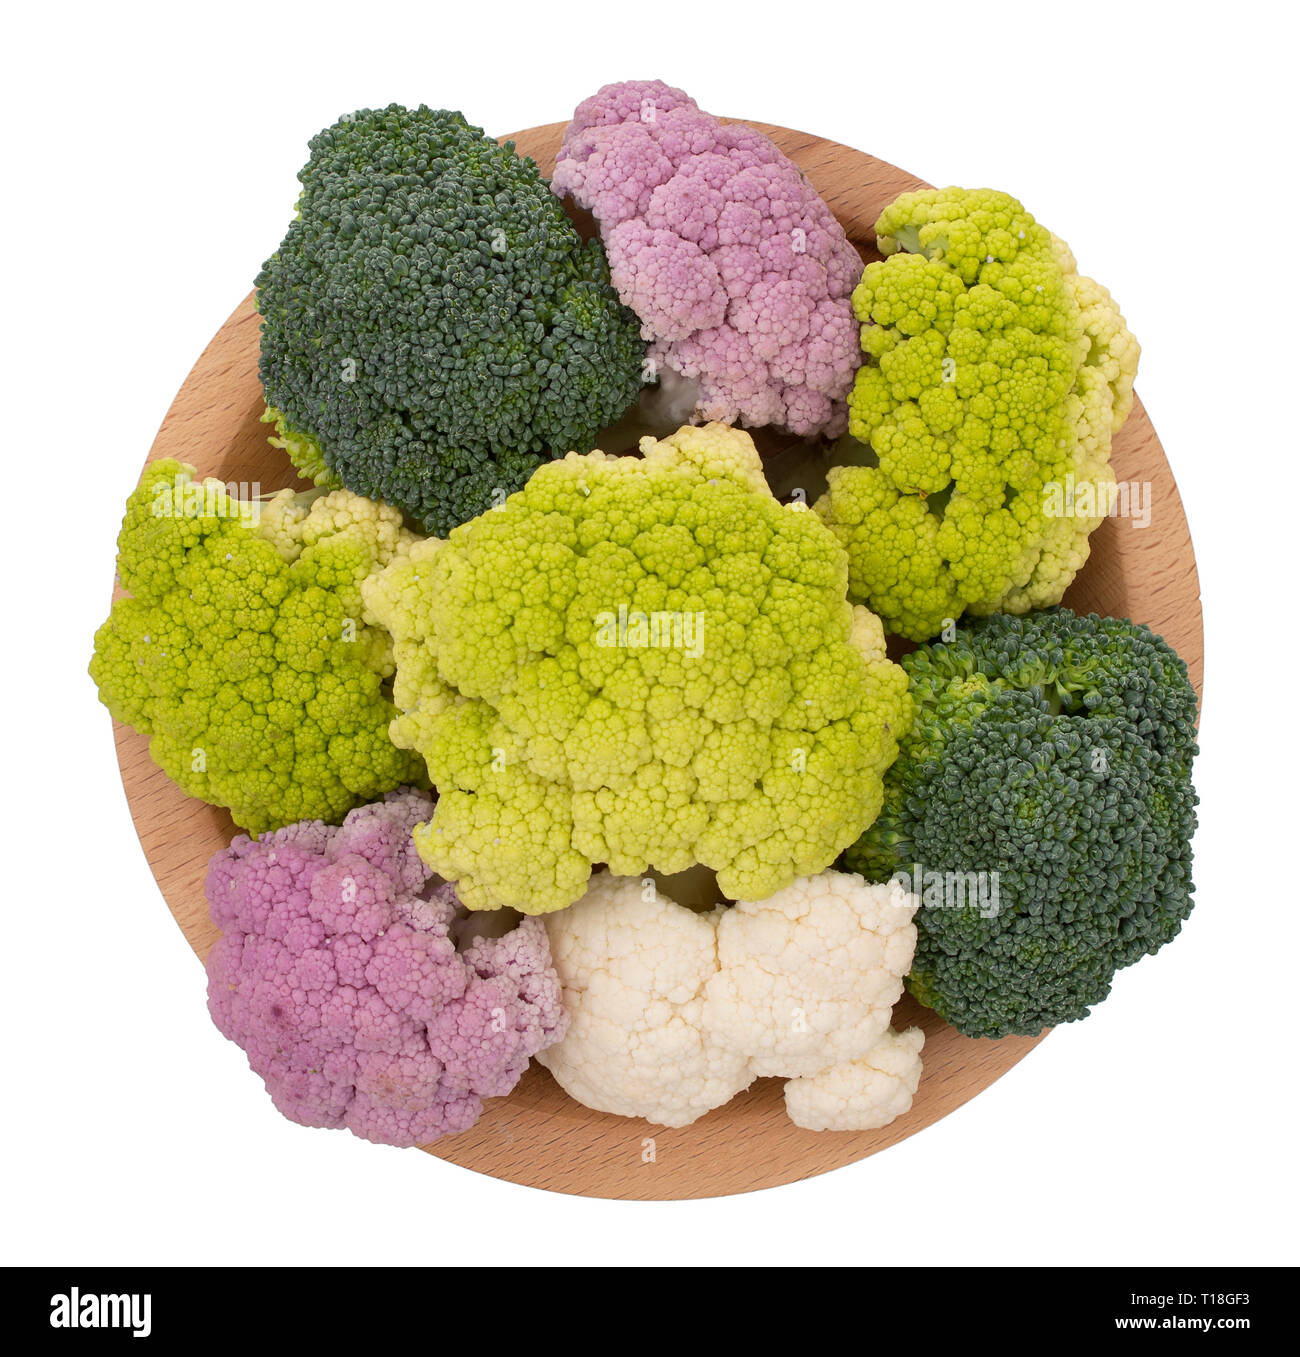 Natürlich bunte Gemüse auf Holzplatte, isoliert auf Weiss. Sortierte rohen Blumenkohl, mit Brokkoliröschen. Gesunde Sortiment. Stockfoto